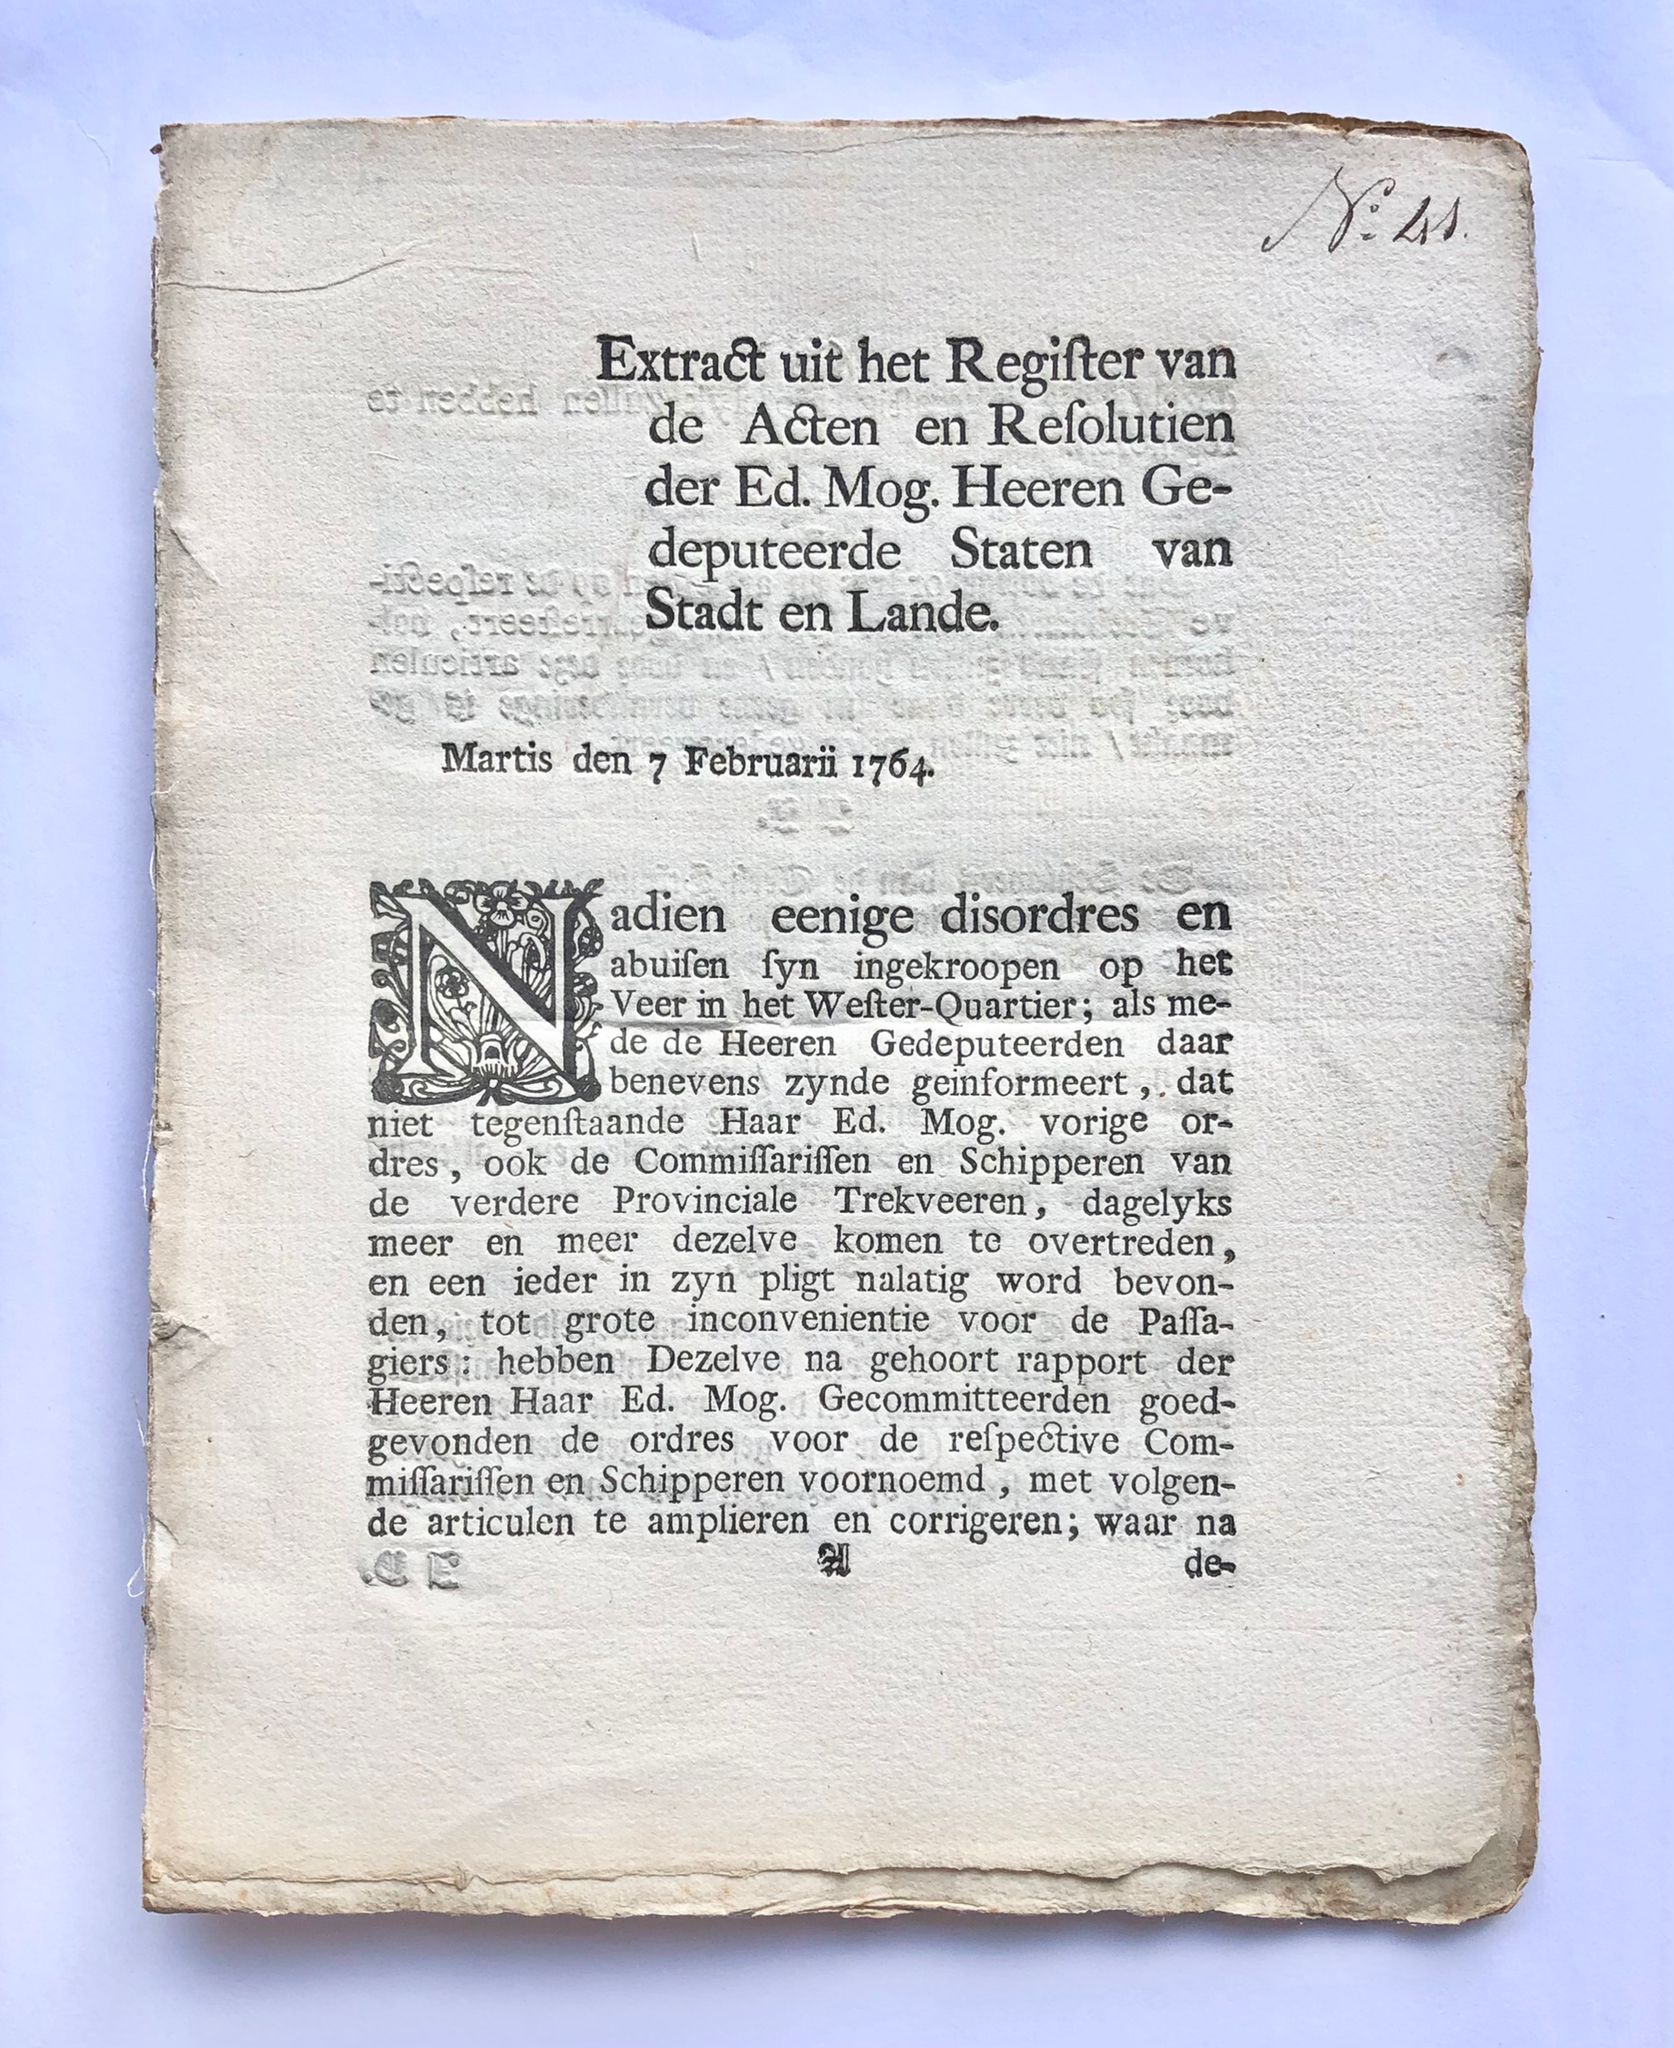 [Groningen, 1764] Extract uit het Register van de Acten en Resolutien der Ed. Mog. Heeren Gedeputeerde Staten Stadt en Lande, Martis den 7 Februarii 1764, No. 41, [1764], 7 pp.